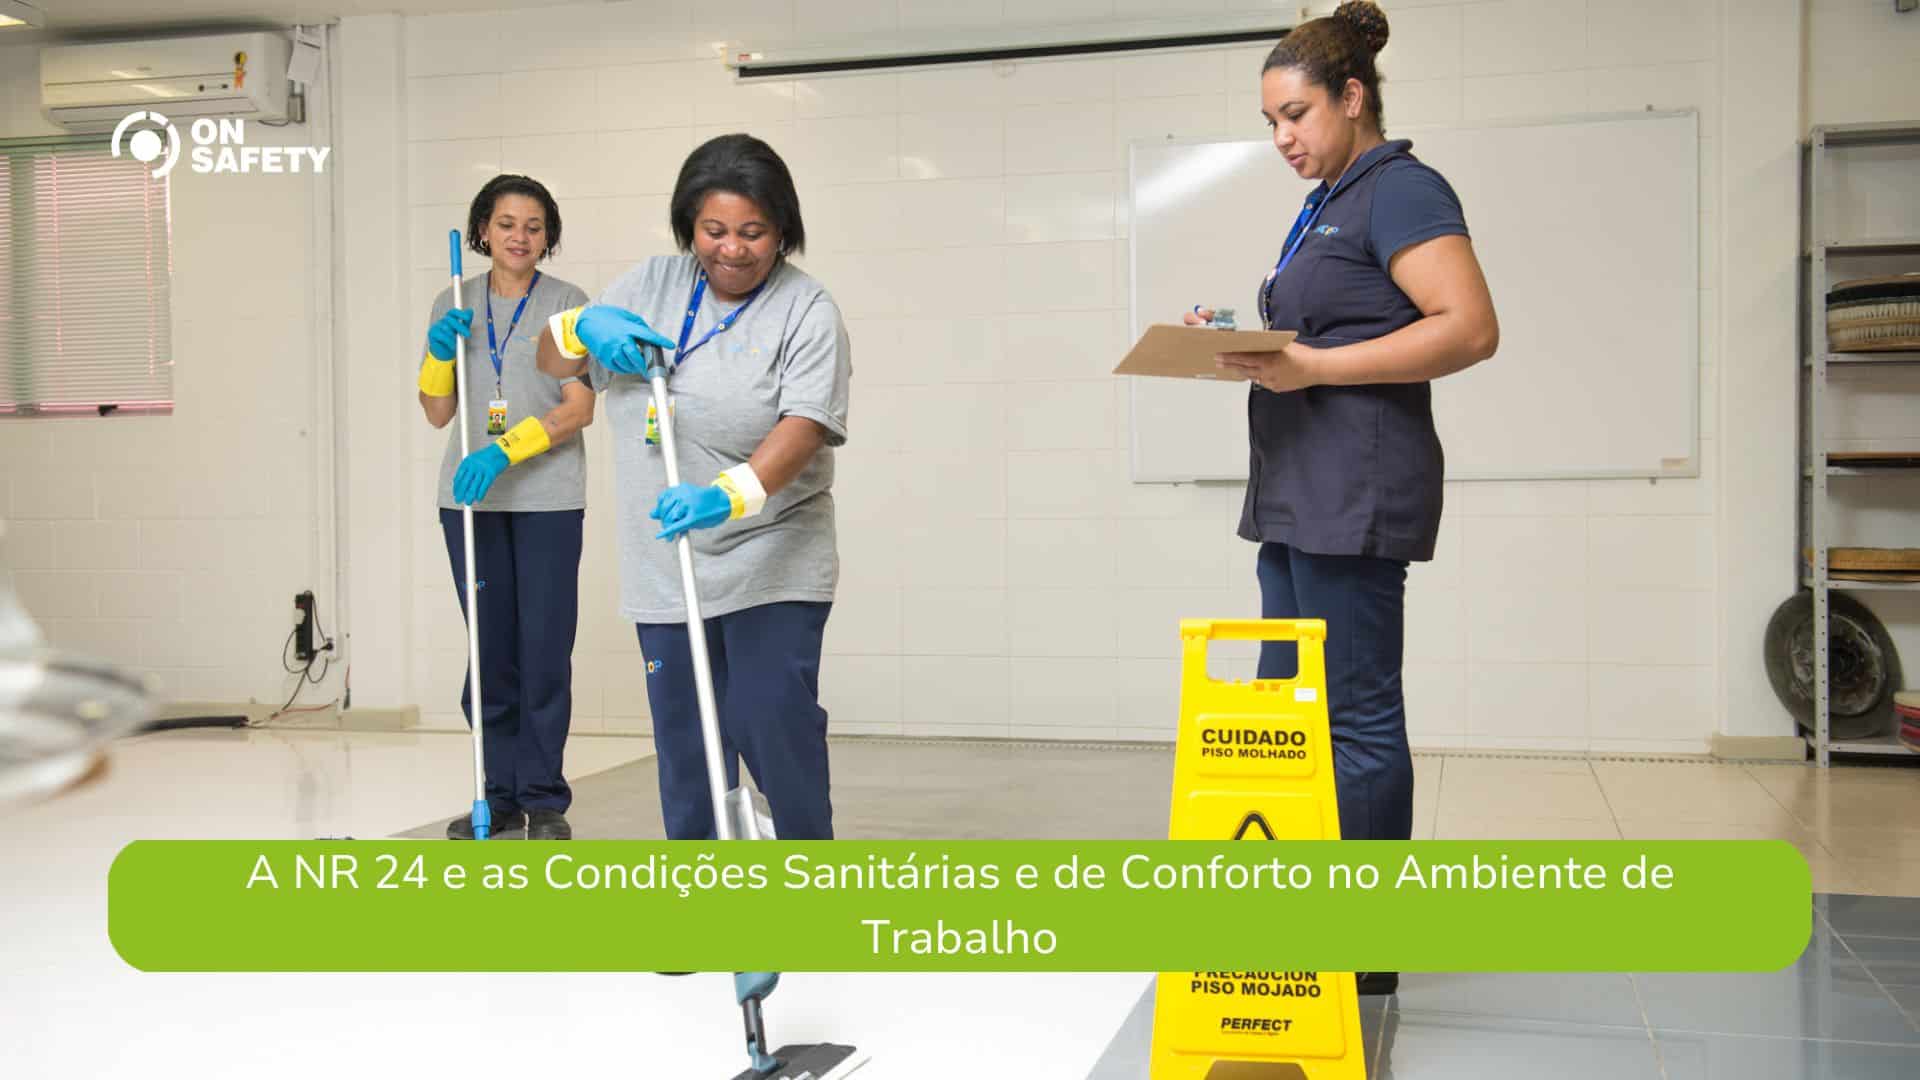 A NR 24 e as Condições Sanitárias e de Conforto no Ambiente de Trabalho